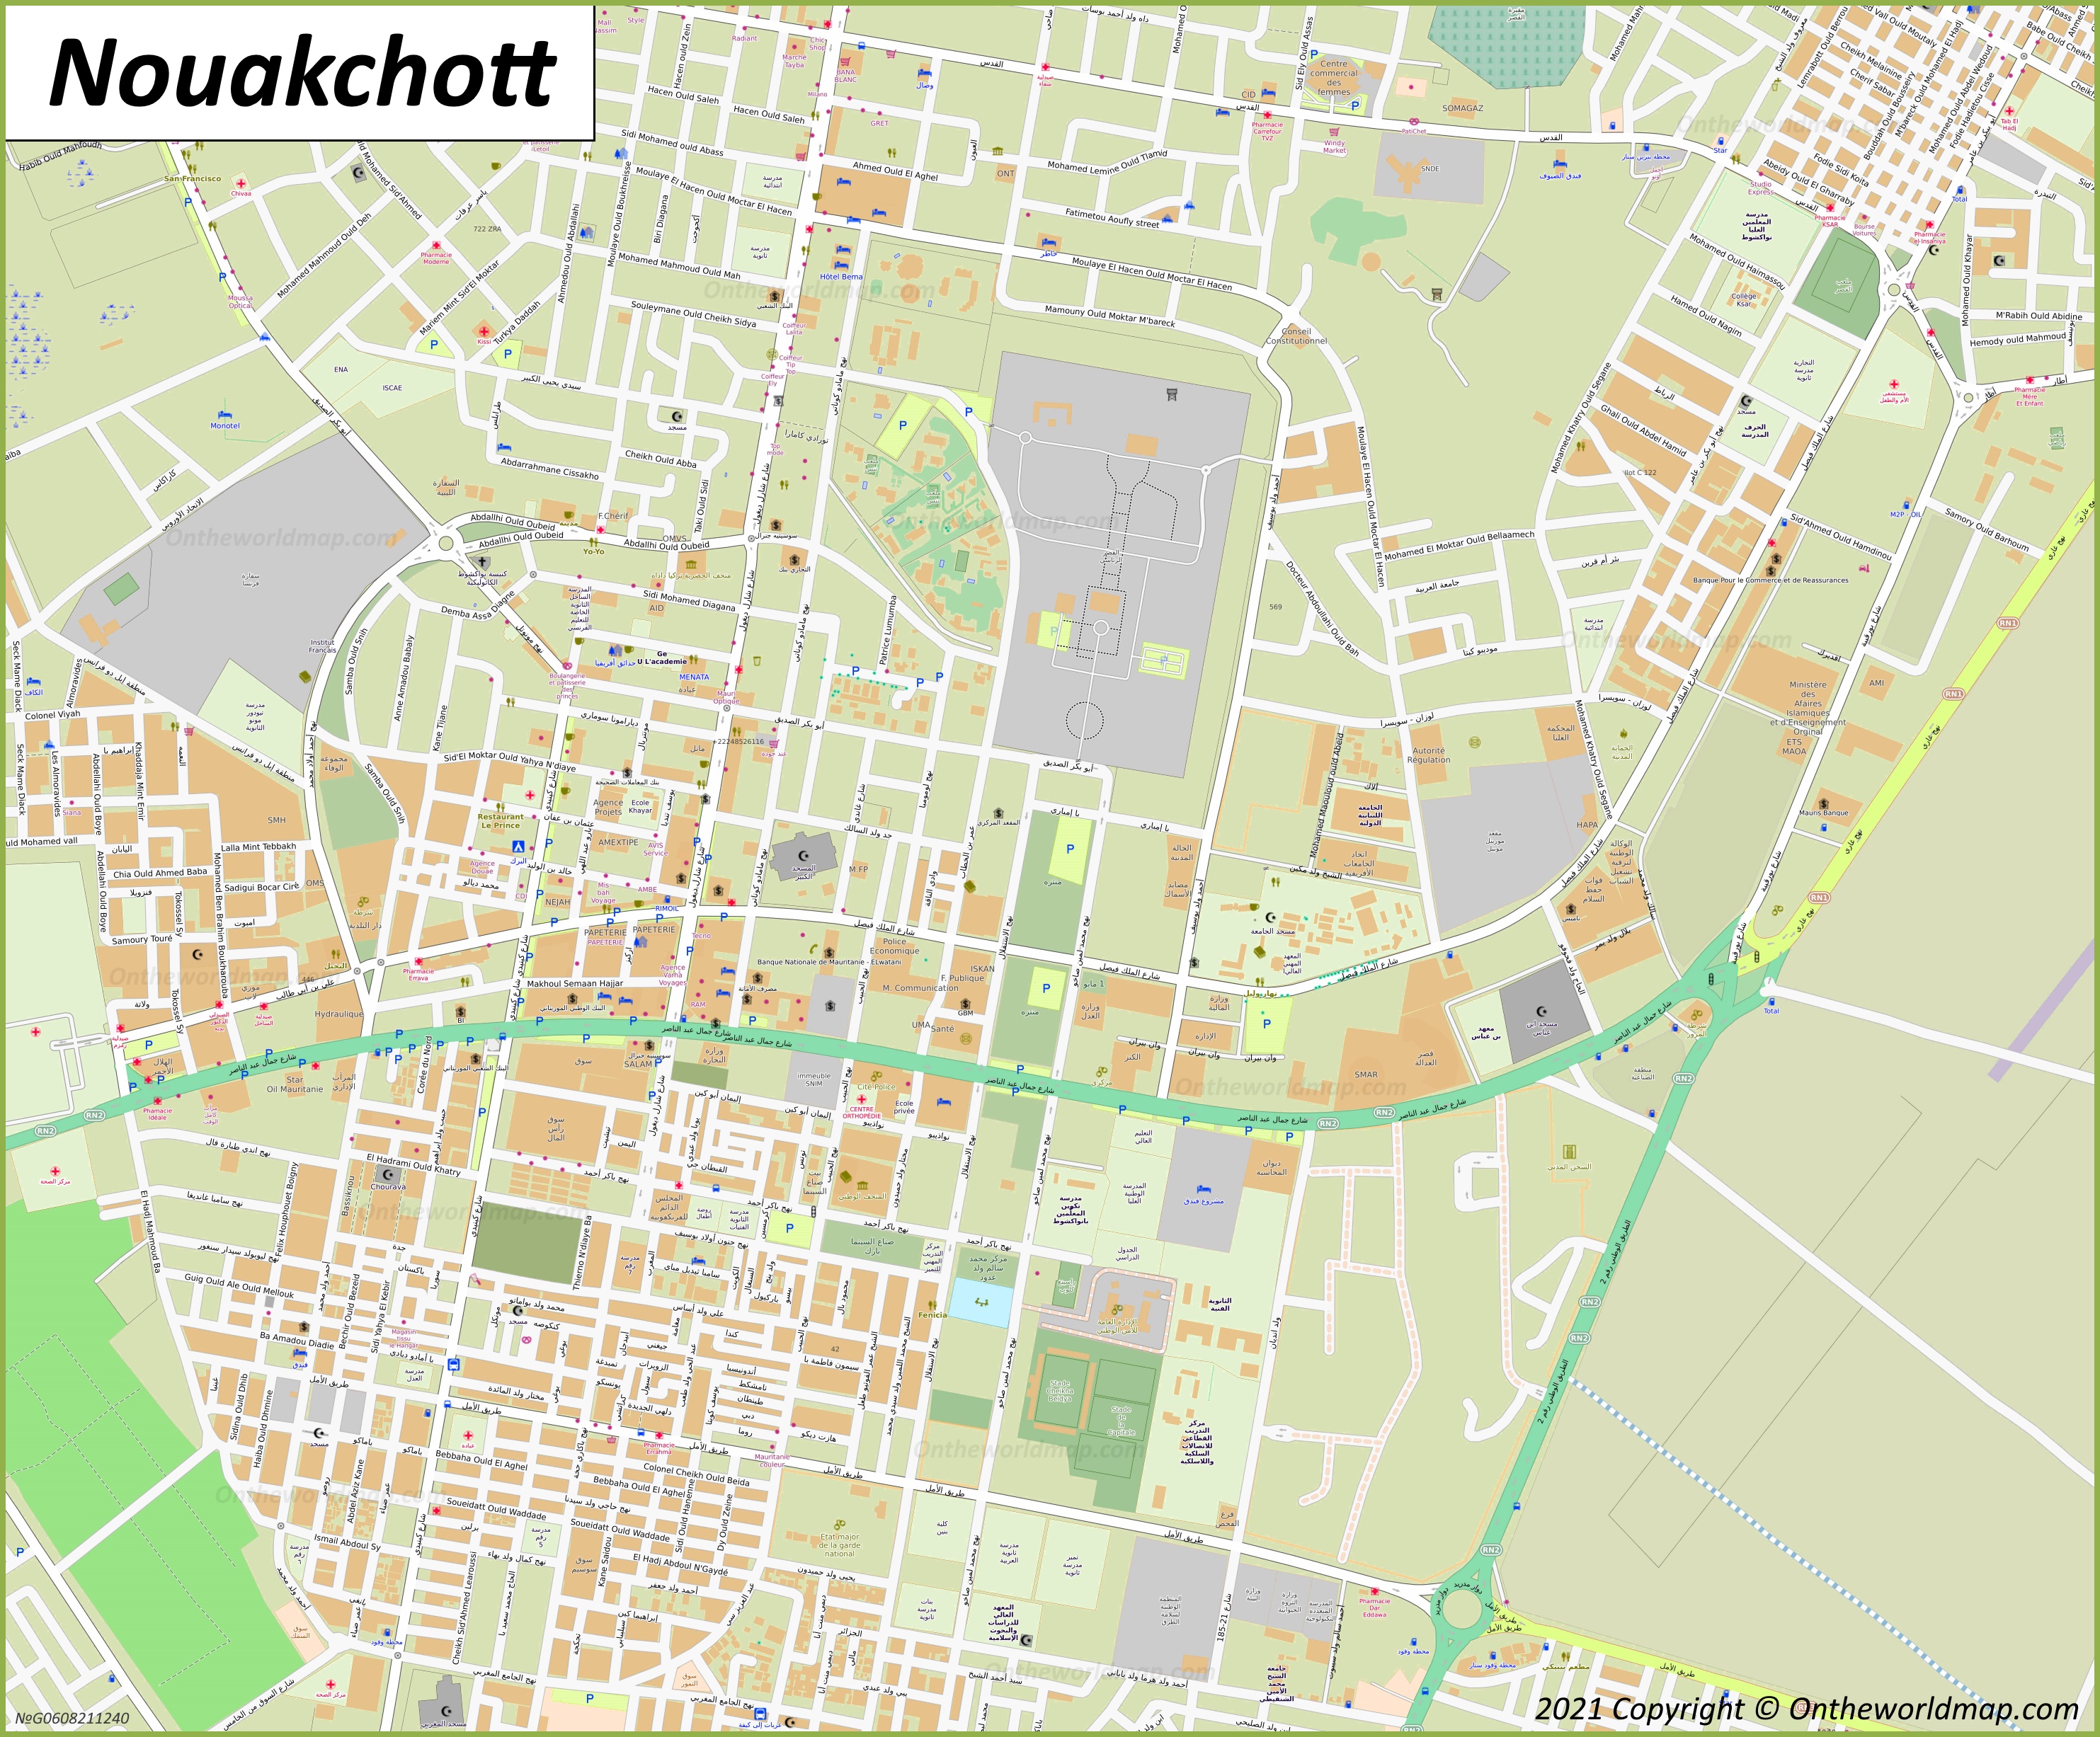 Nouakchott City Center Map